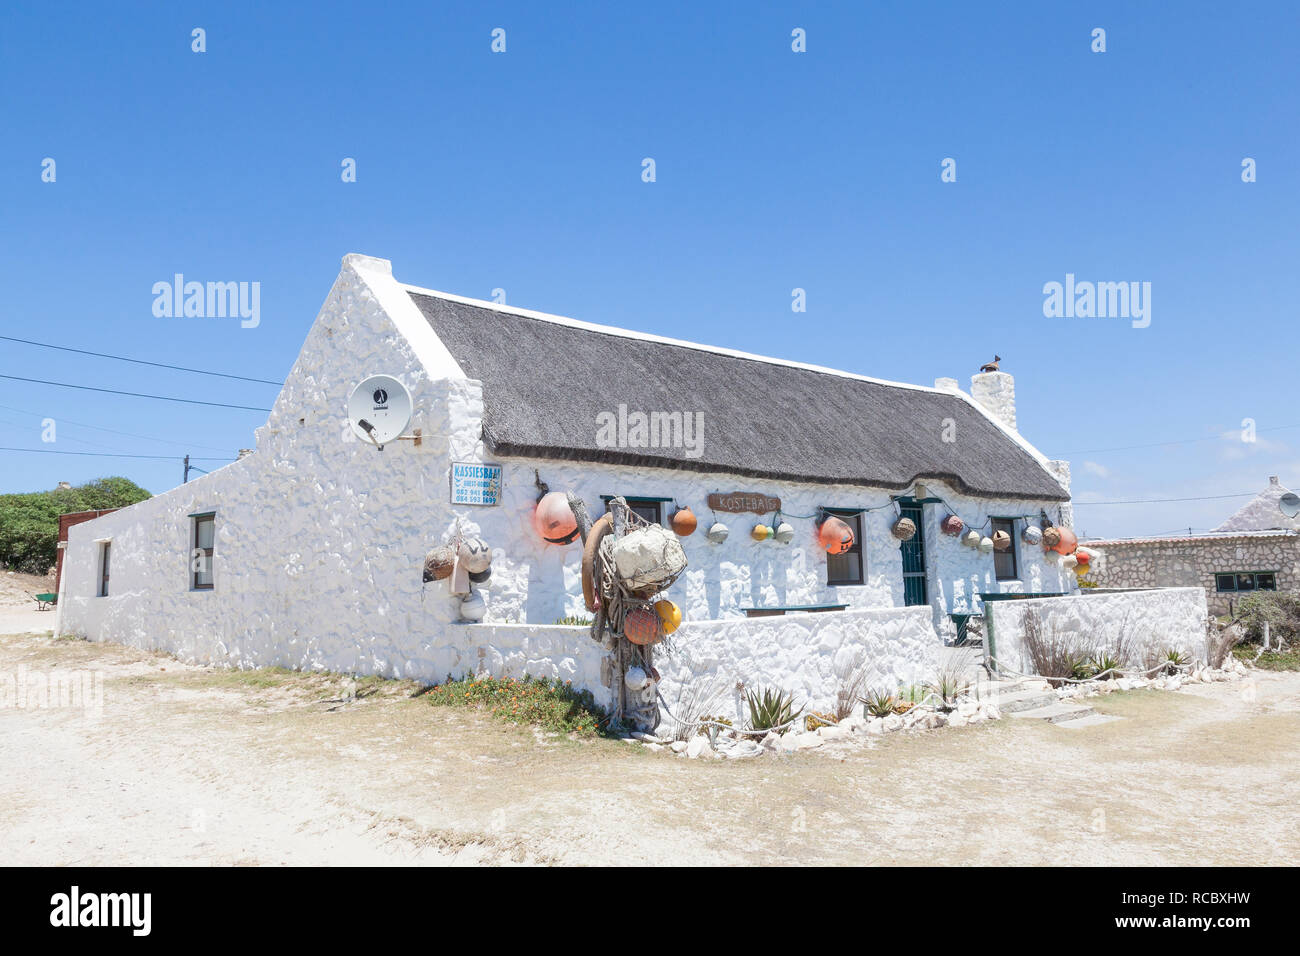 In einem umgebauten Fischer; s Cottage (Kostebaie - Kosten viel) und bietet touristische Unterkunft in der Ortschaft Arniston, Agulhas, Western Cape, South Afri Stockfoto